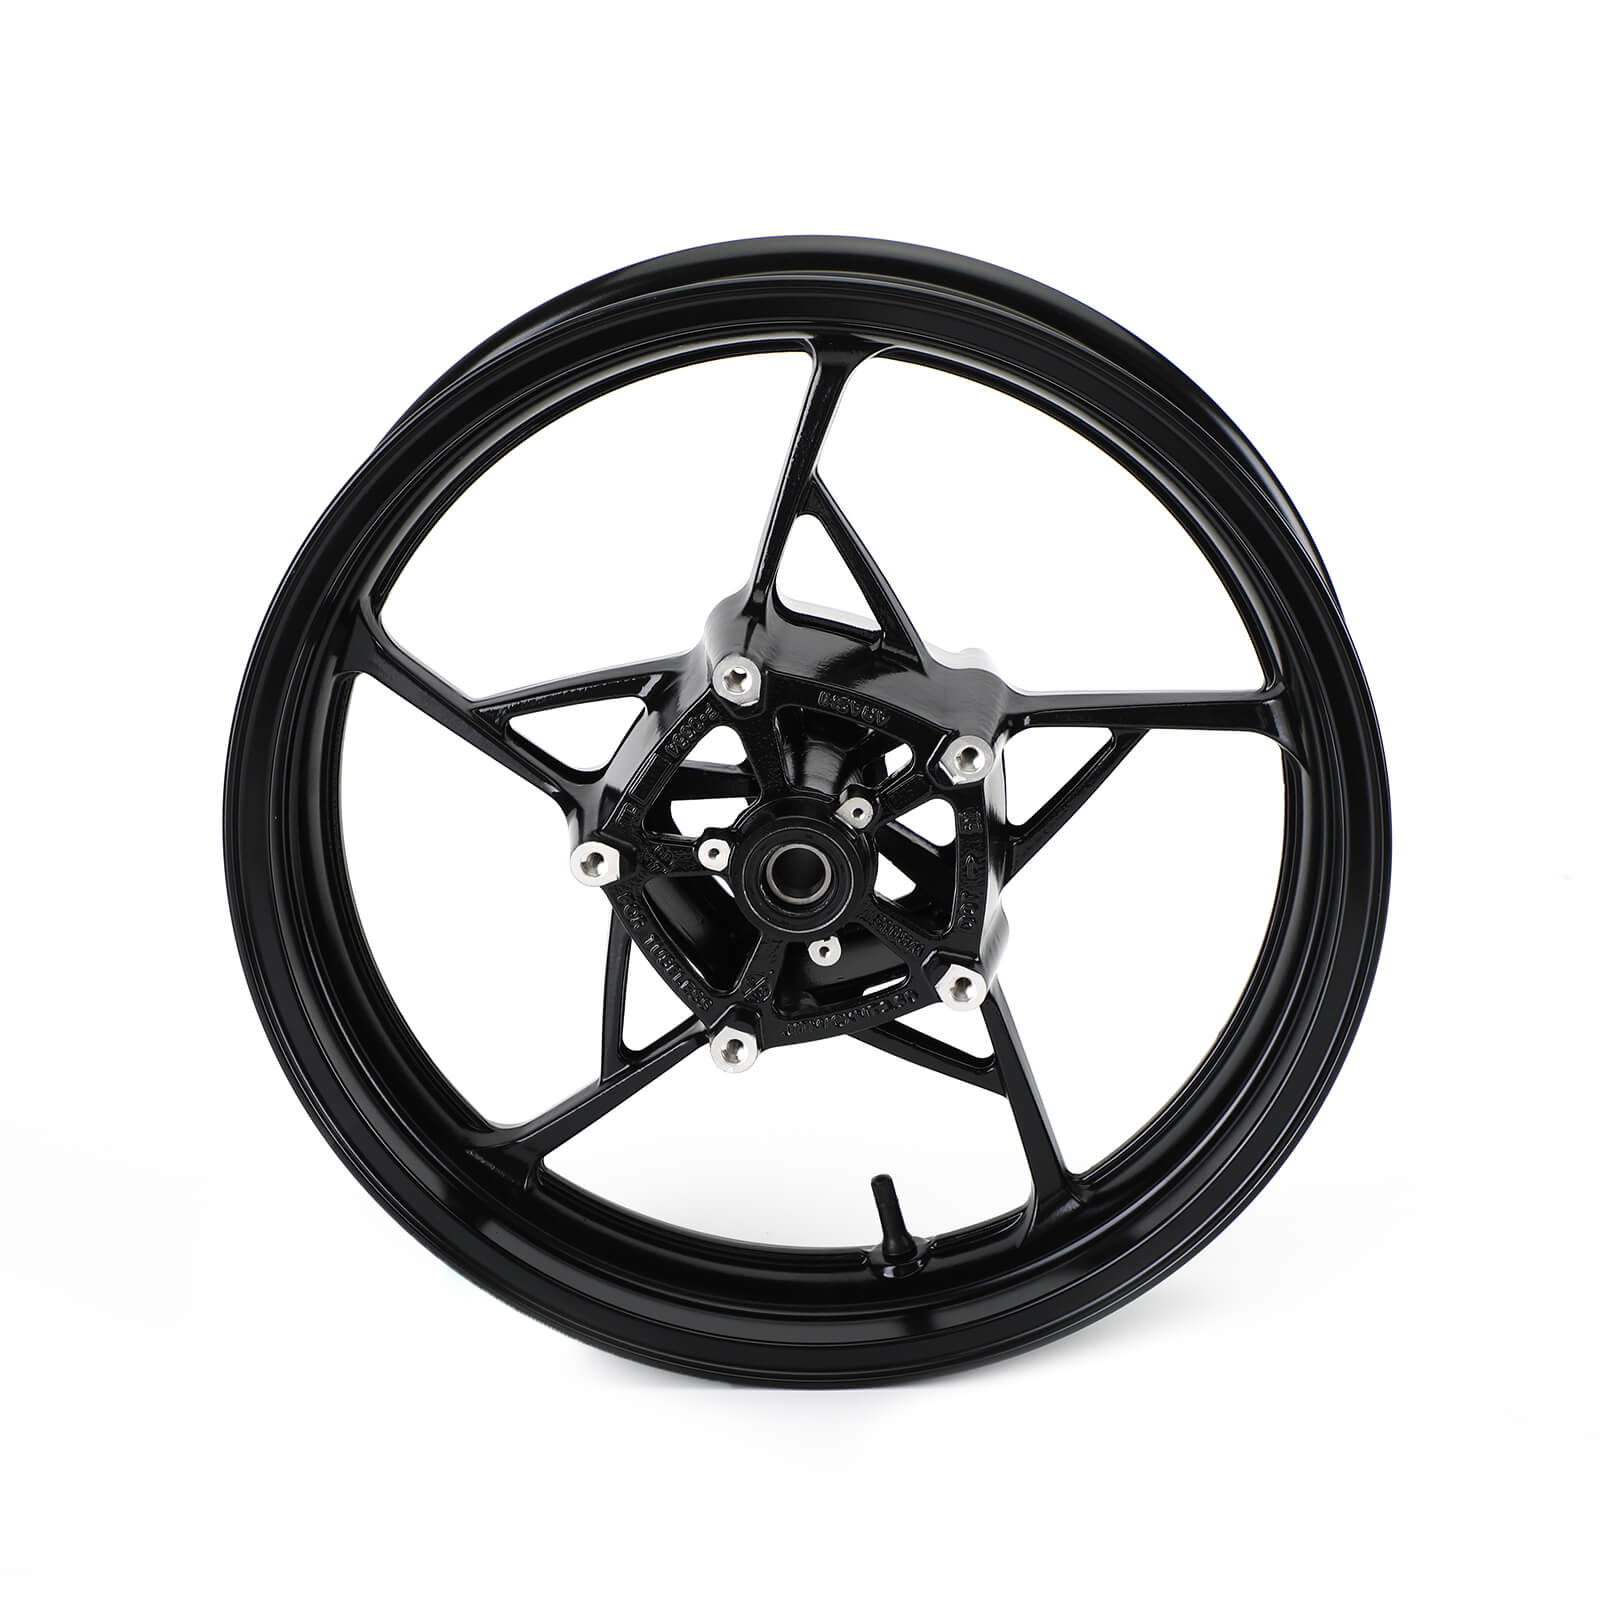 Front Wheel Rim Fit For Kawasaki Ninja 650 Z650 Z900 2017-2020 Black